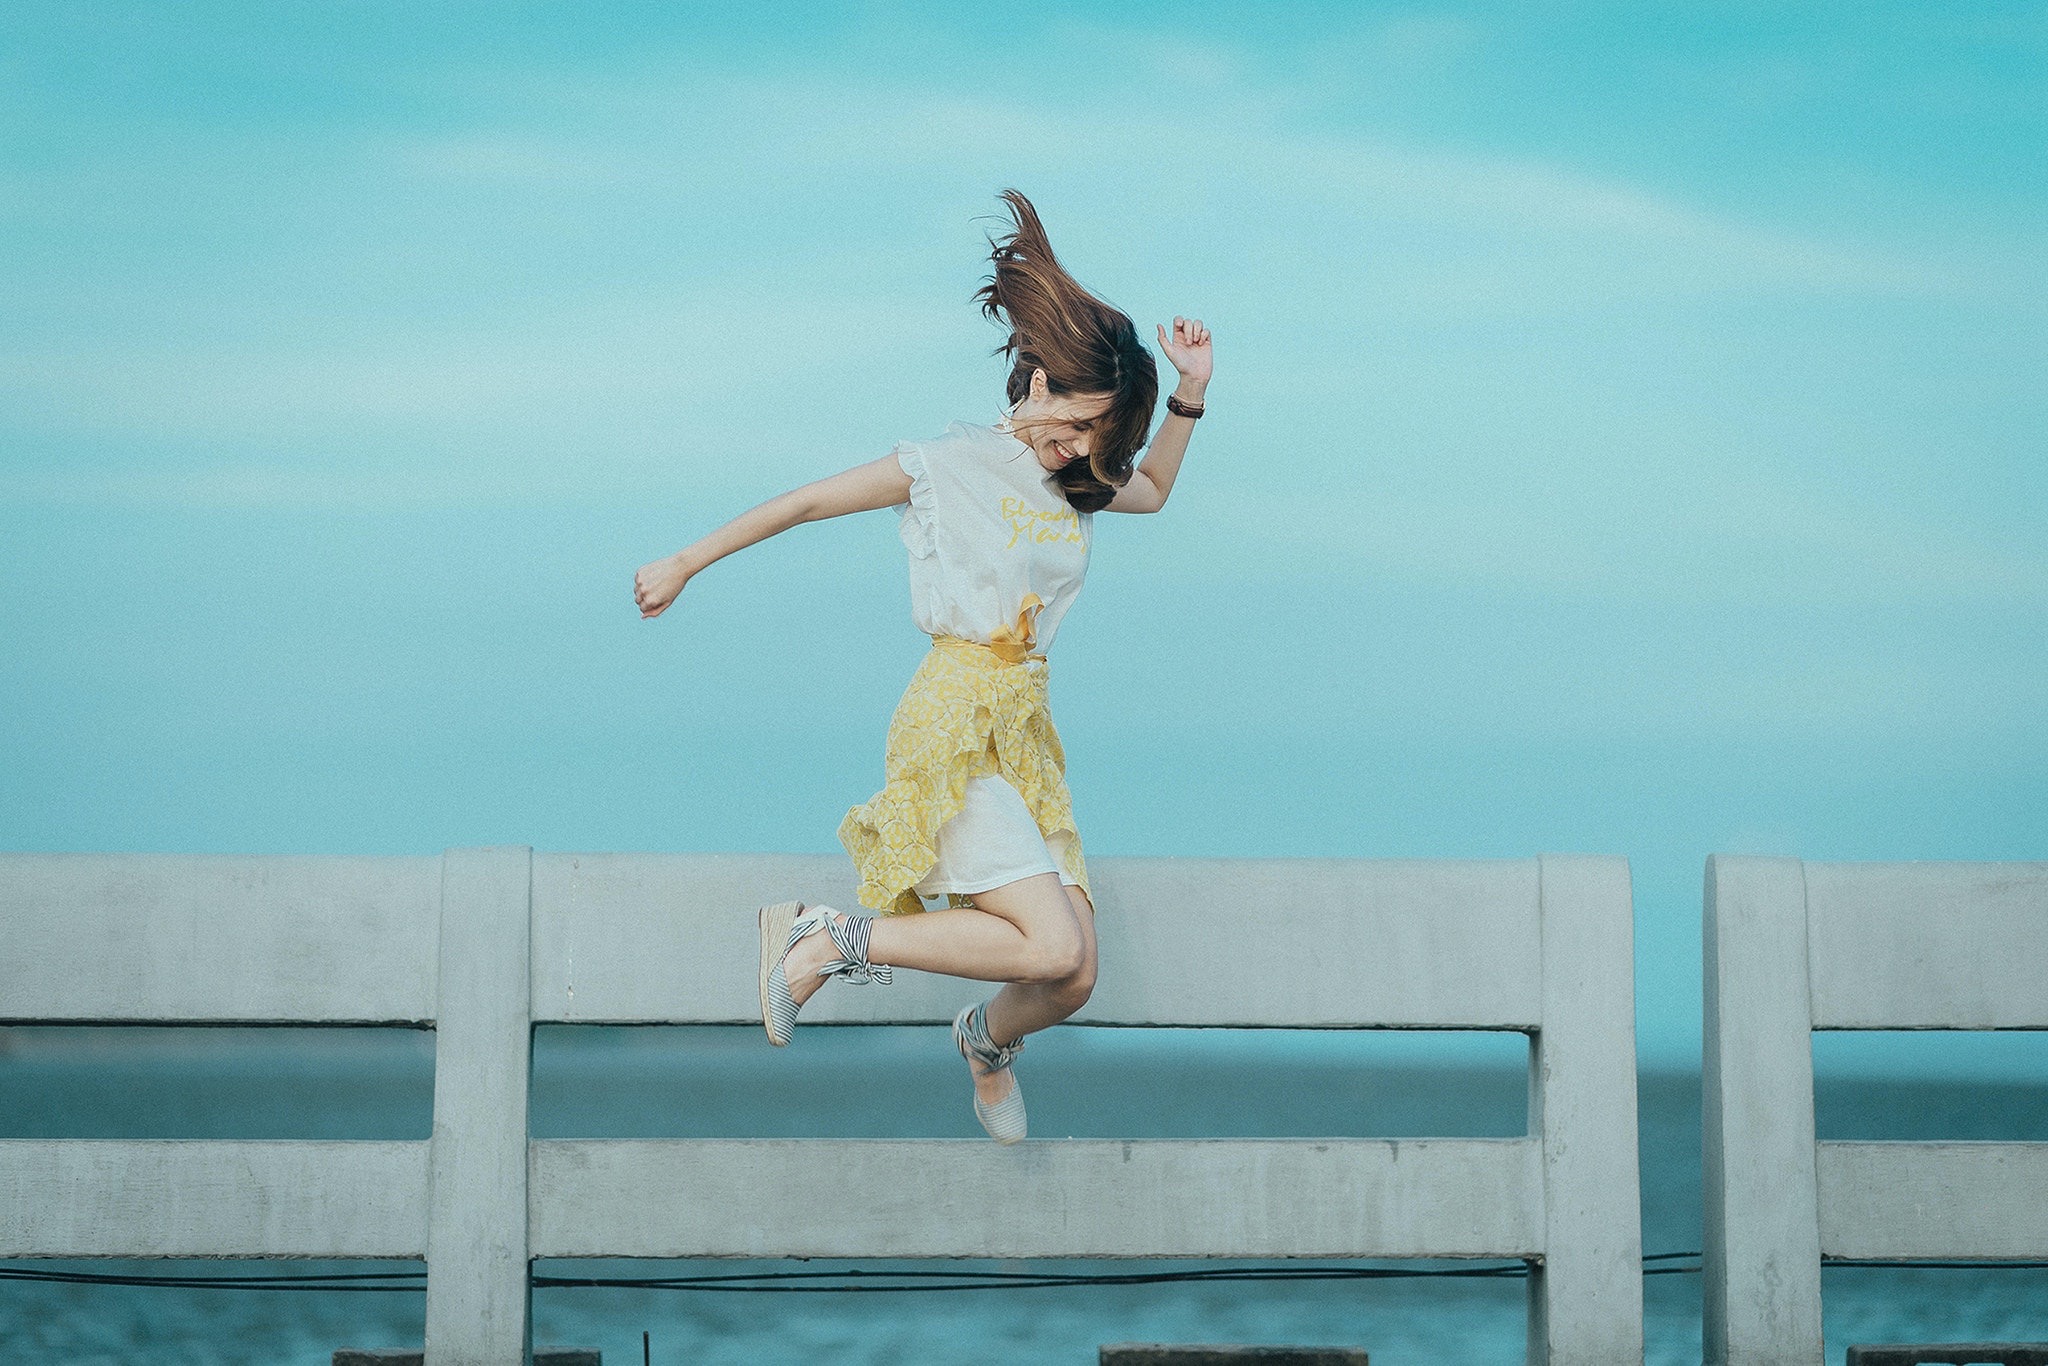 Een vrouw met een gele rok en witte blouse en lang bruin haar springt in de lucht, achter haar zie je een reling zee. Foto via pexels door: Quang Anh Ha Nguyen